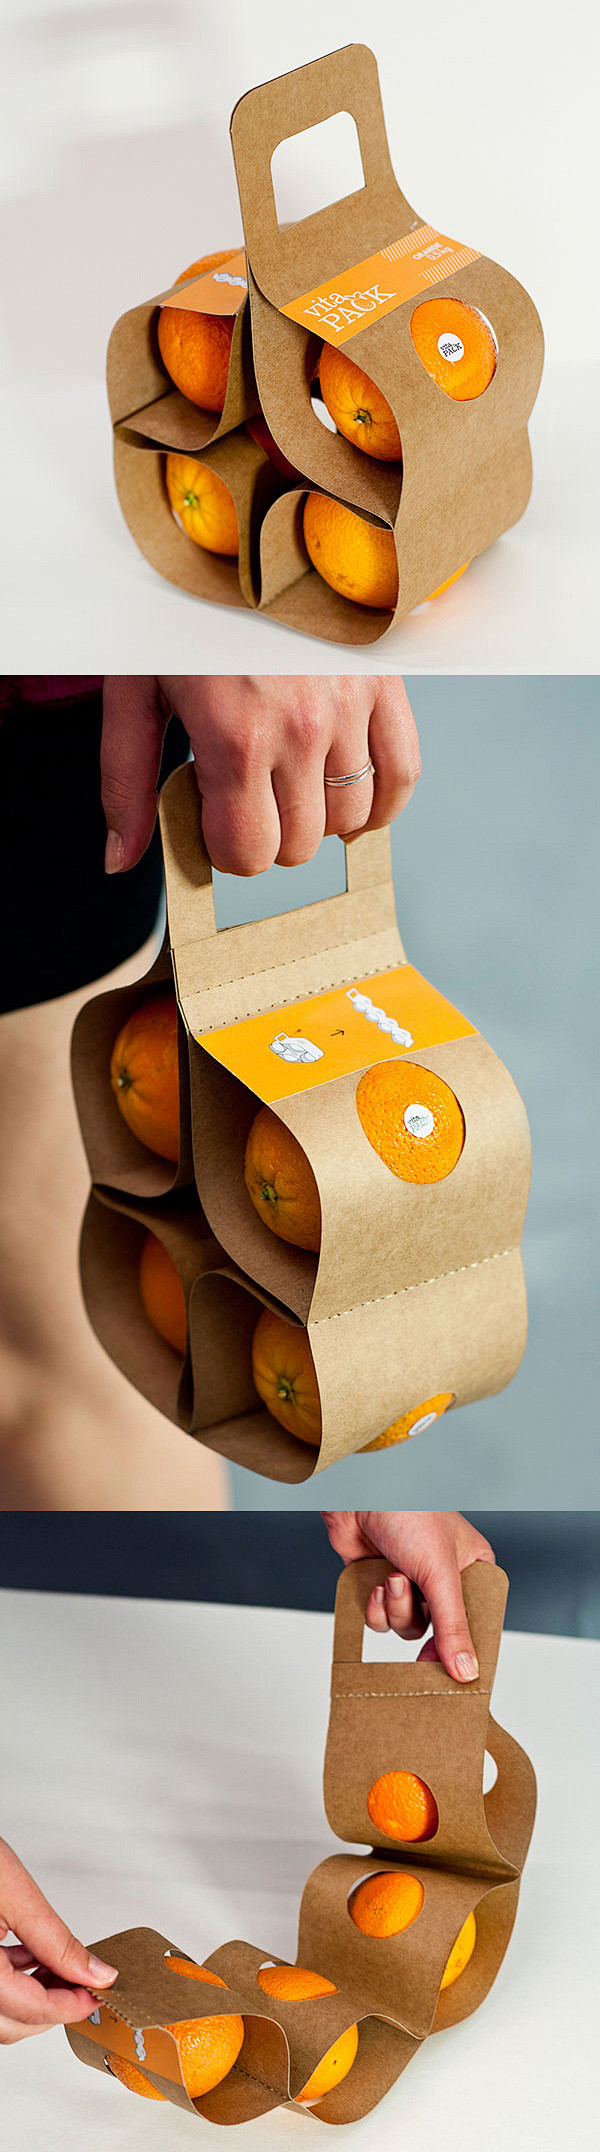 VitaPack橙子手提包装